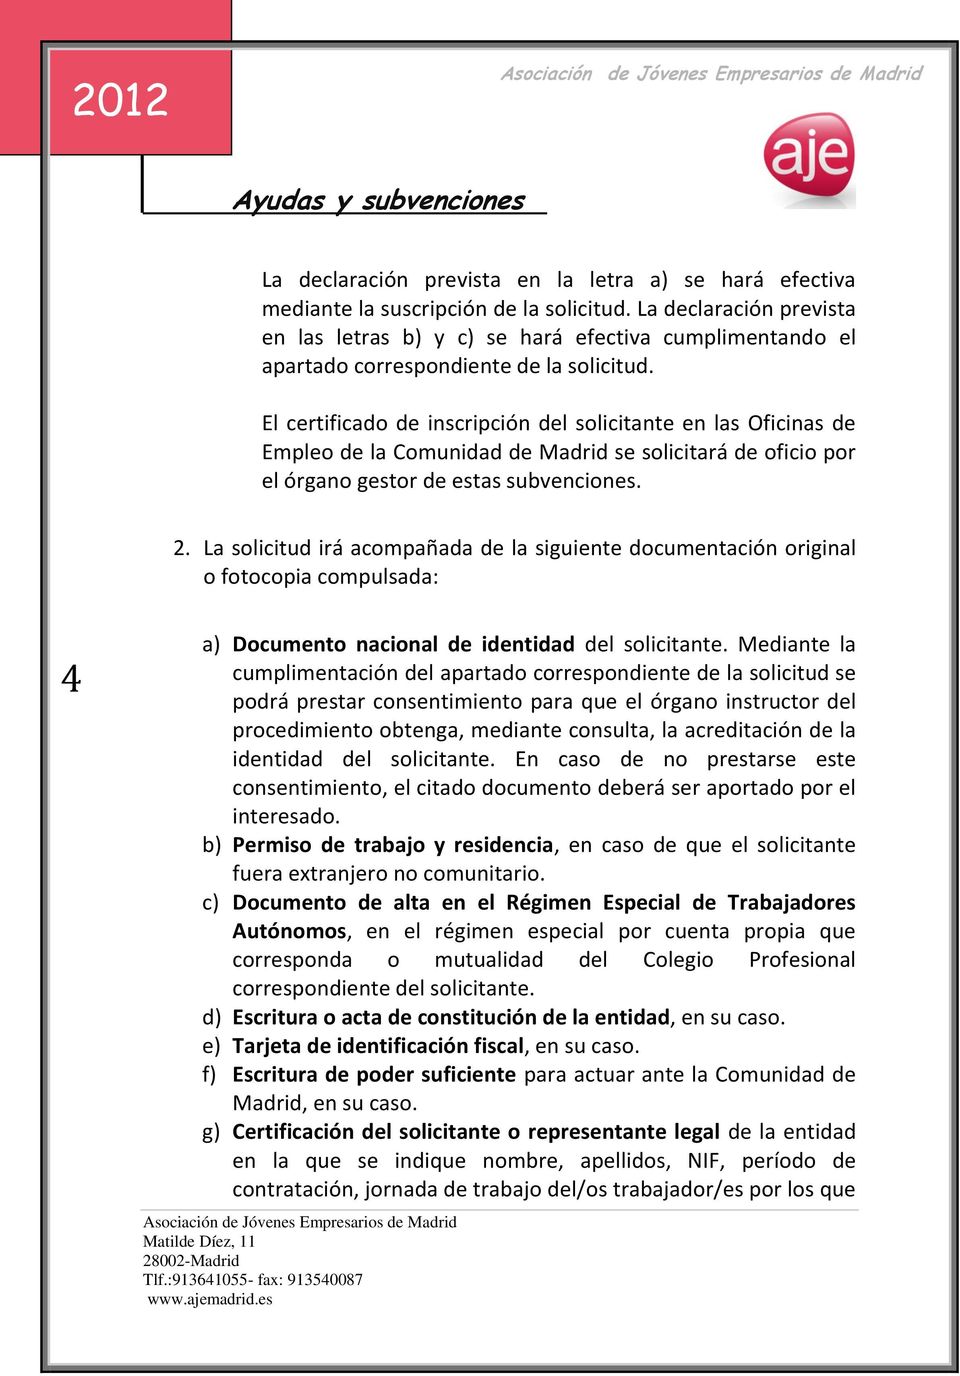 El certificado de inscripción del solicitante en las Oficinas de Empleo de la Comunidad de Madrid se solicitará de oficio por el órgano gestor de estas subvenciones. 2.